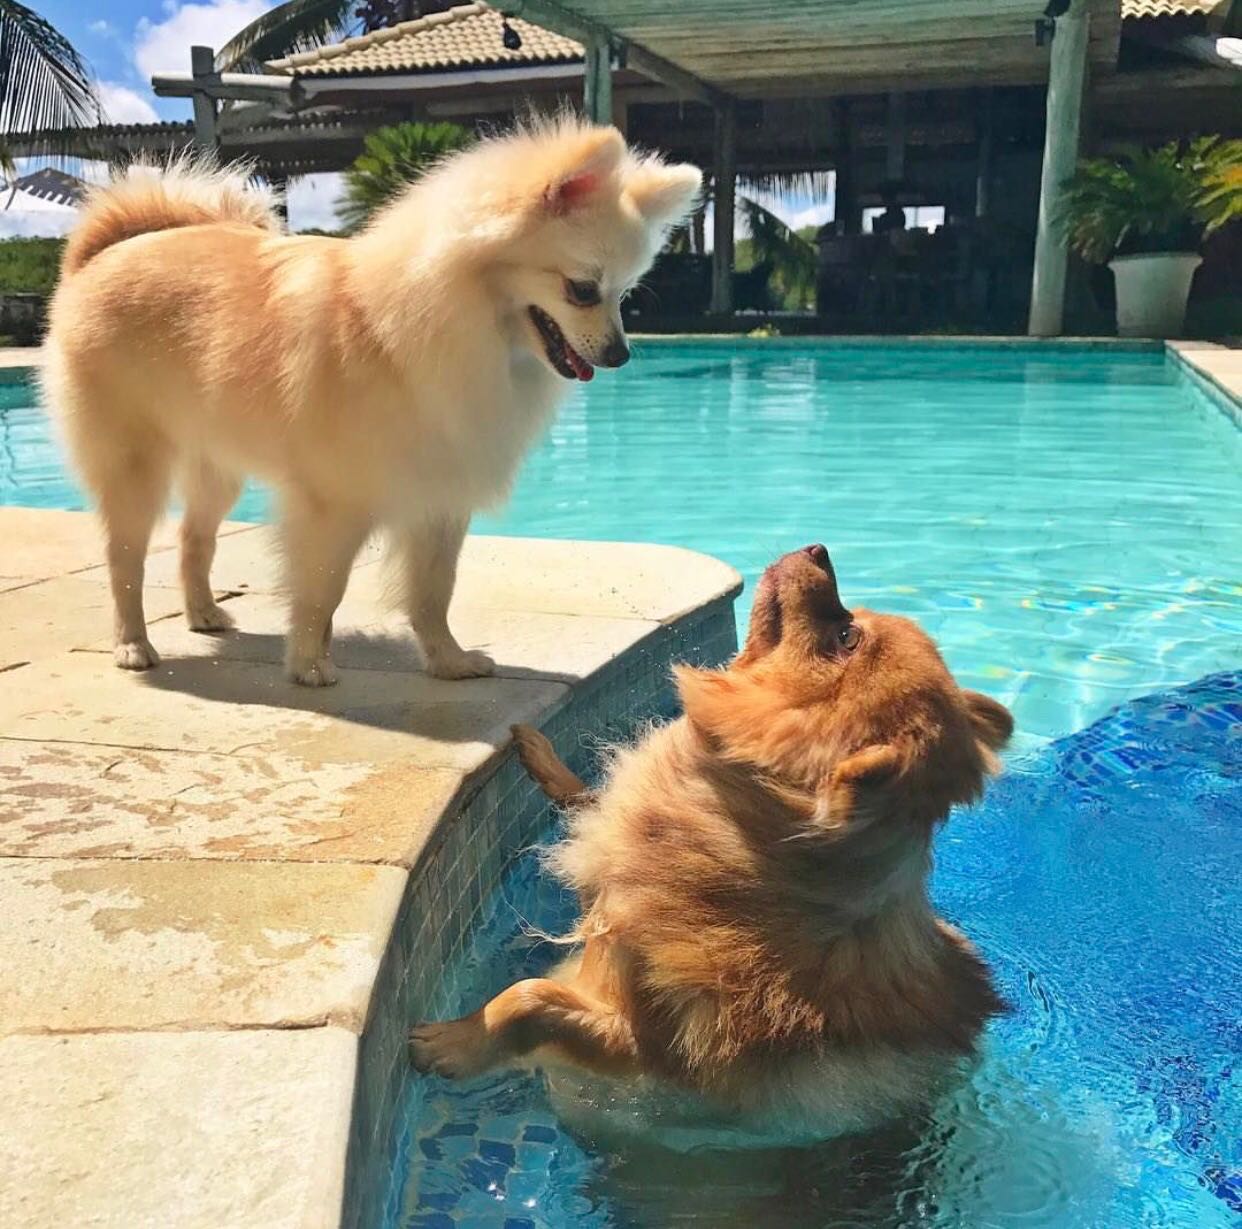 Jolie e Bono curtindo um banho de piscina em Toquinho - Crédito: Arquivo pessoal